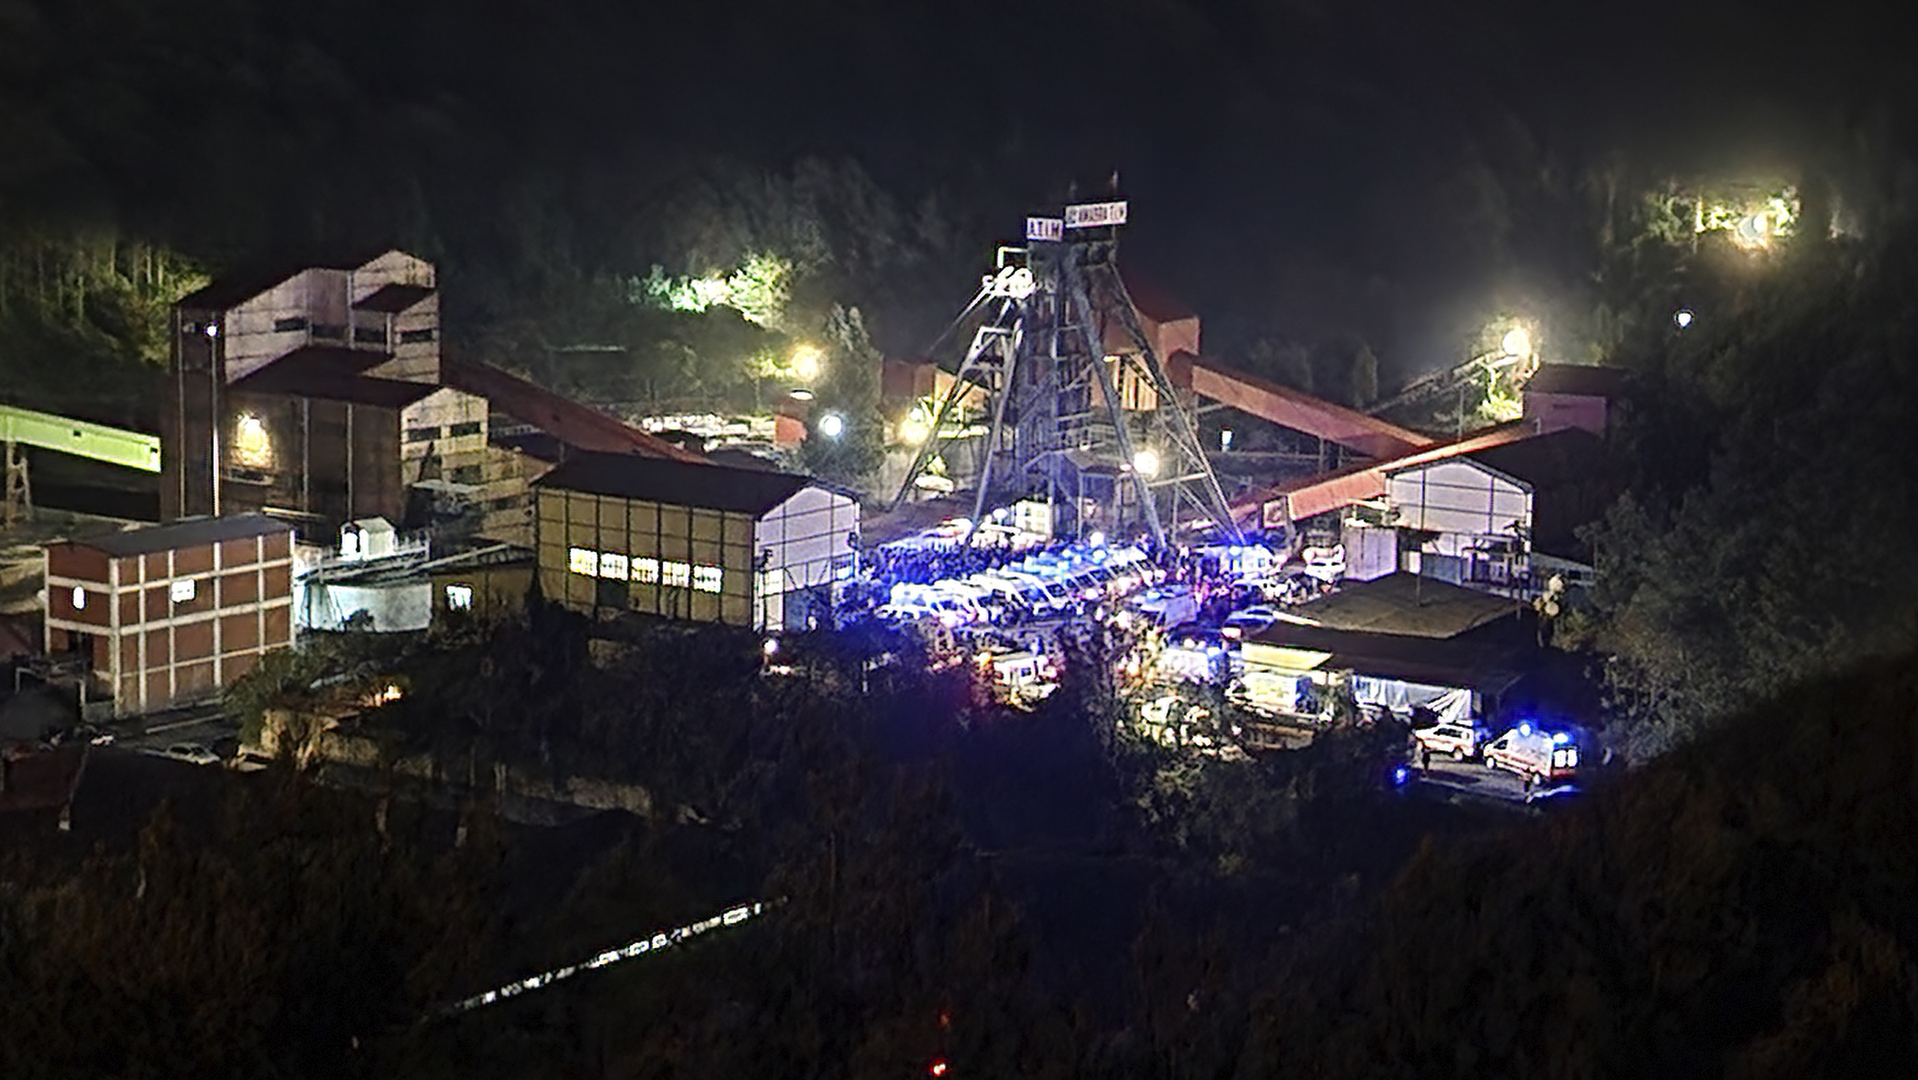 تركيا.. ارتفاع ضحايا انفجار منجم للفحم إلى 42 قتيلا وانتهاء عملية إنقاذ العالقين